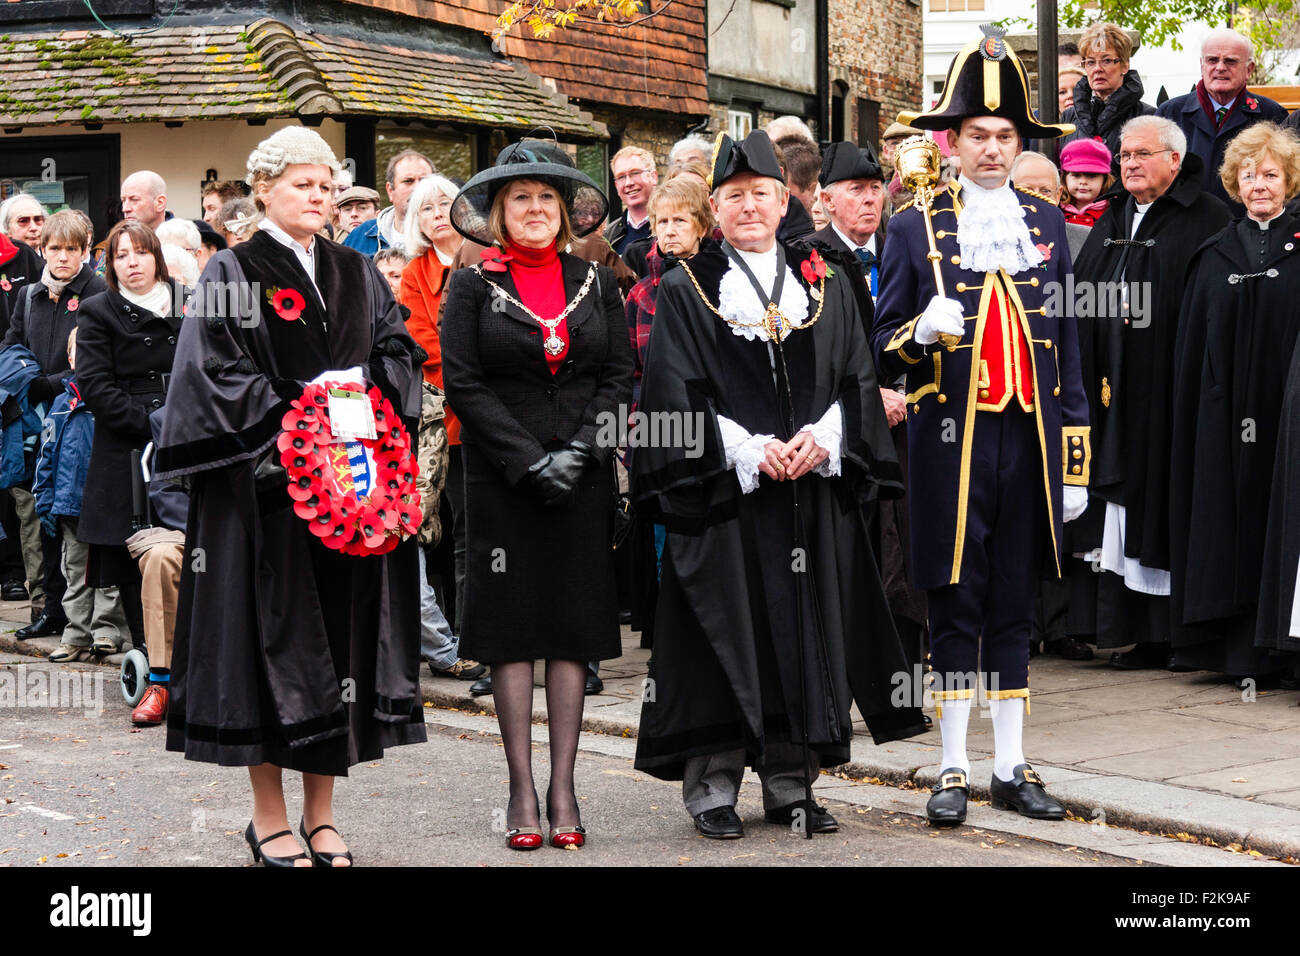 Erinnerung Sonntag am Sandwich, UK. Der Bürgermeister, seine Frau und seine Stadt Sergeant stehen für die Minuten Schweigen während der Gedenkfeier. Stockfoto